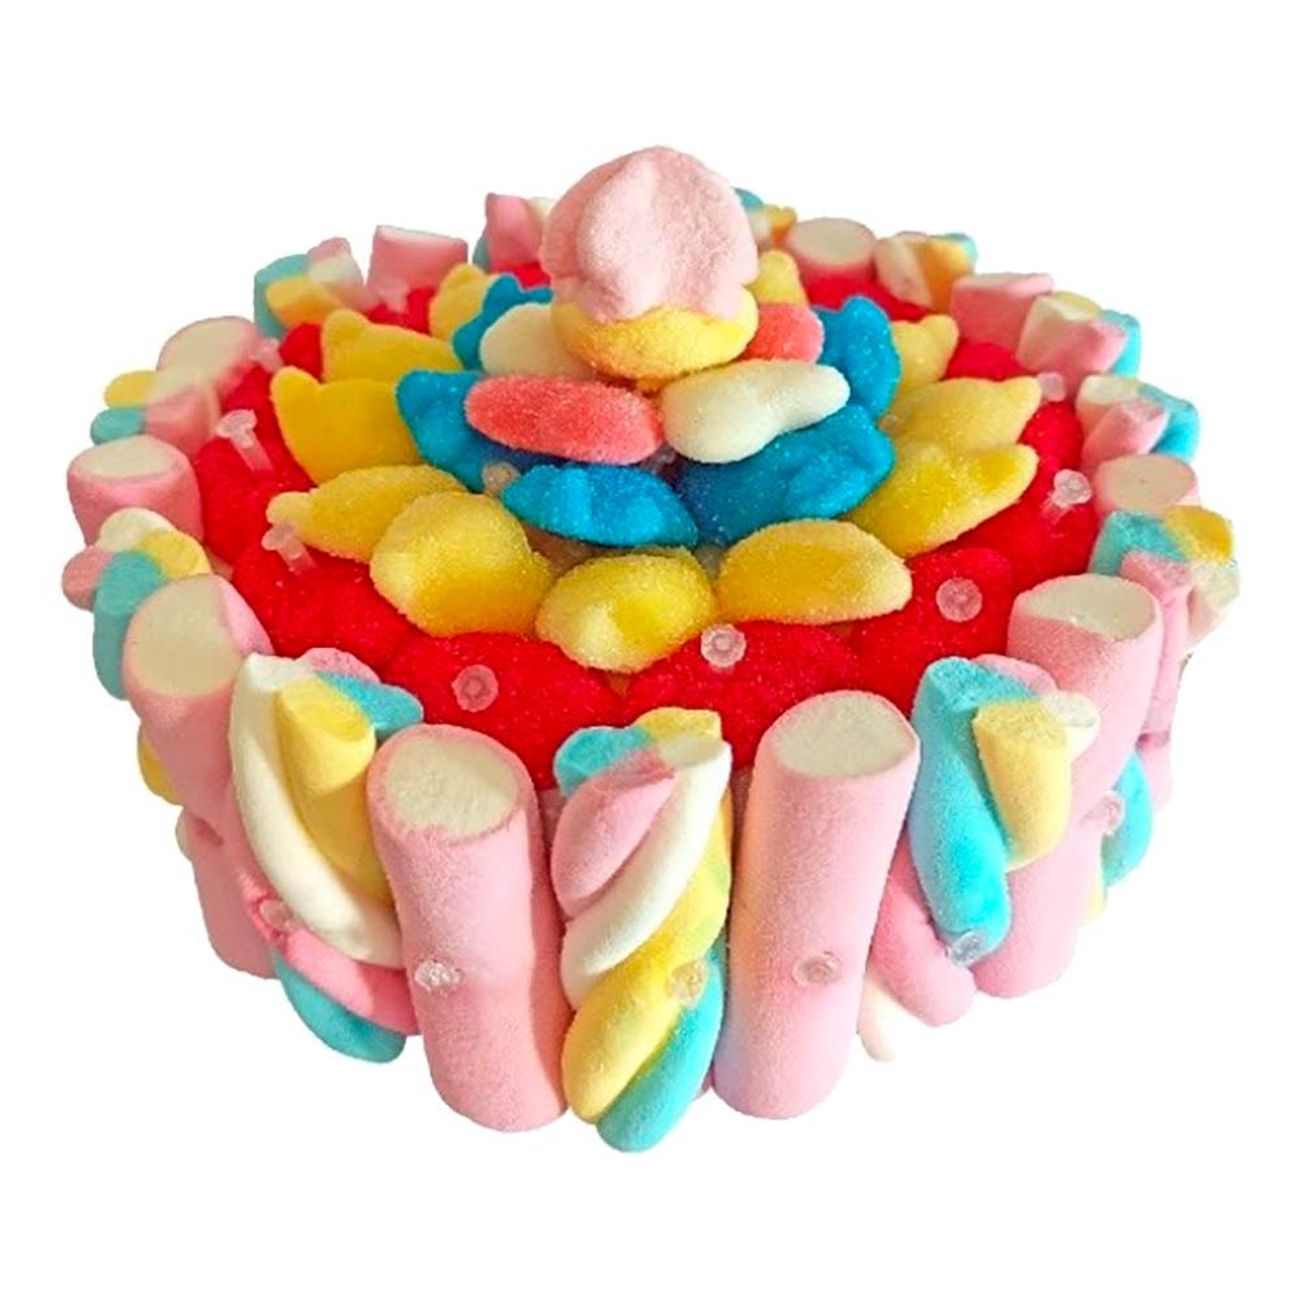 sweet-cake-marshmallowtarta-95181-1